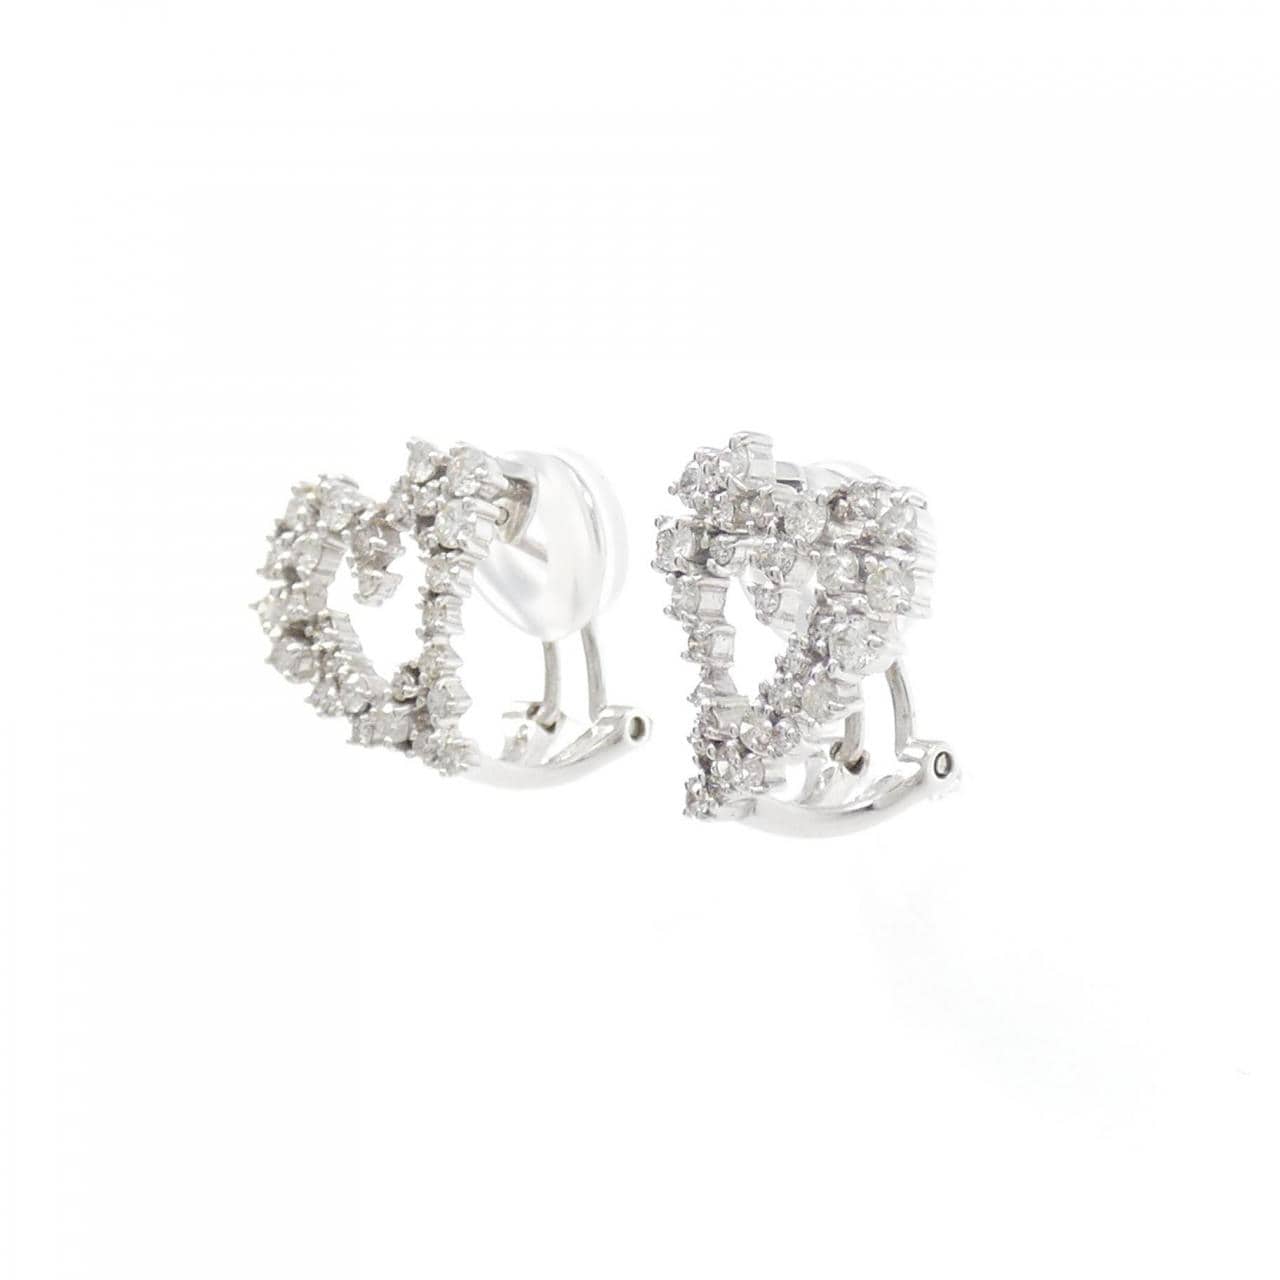 K18WG Heart Diamond Earrings/Earrings 1.00CT